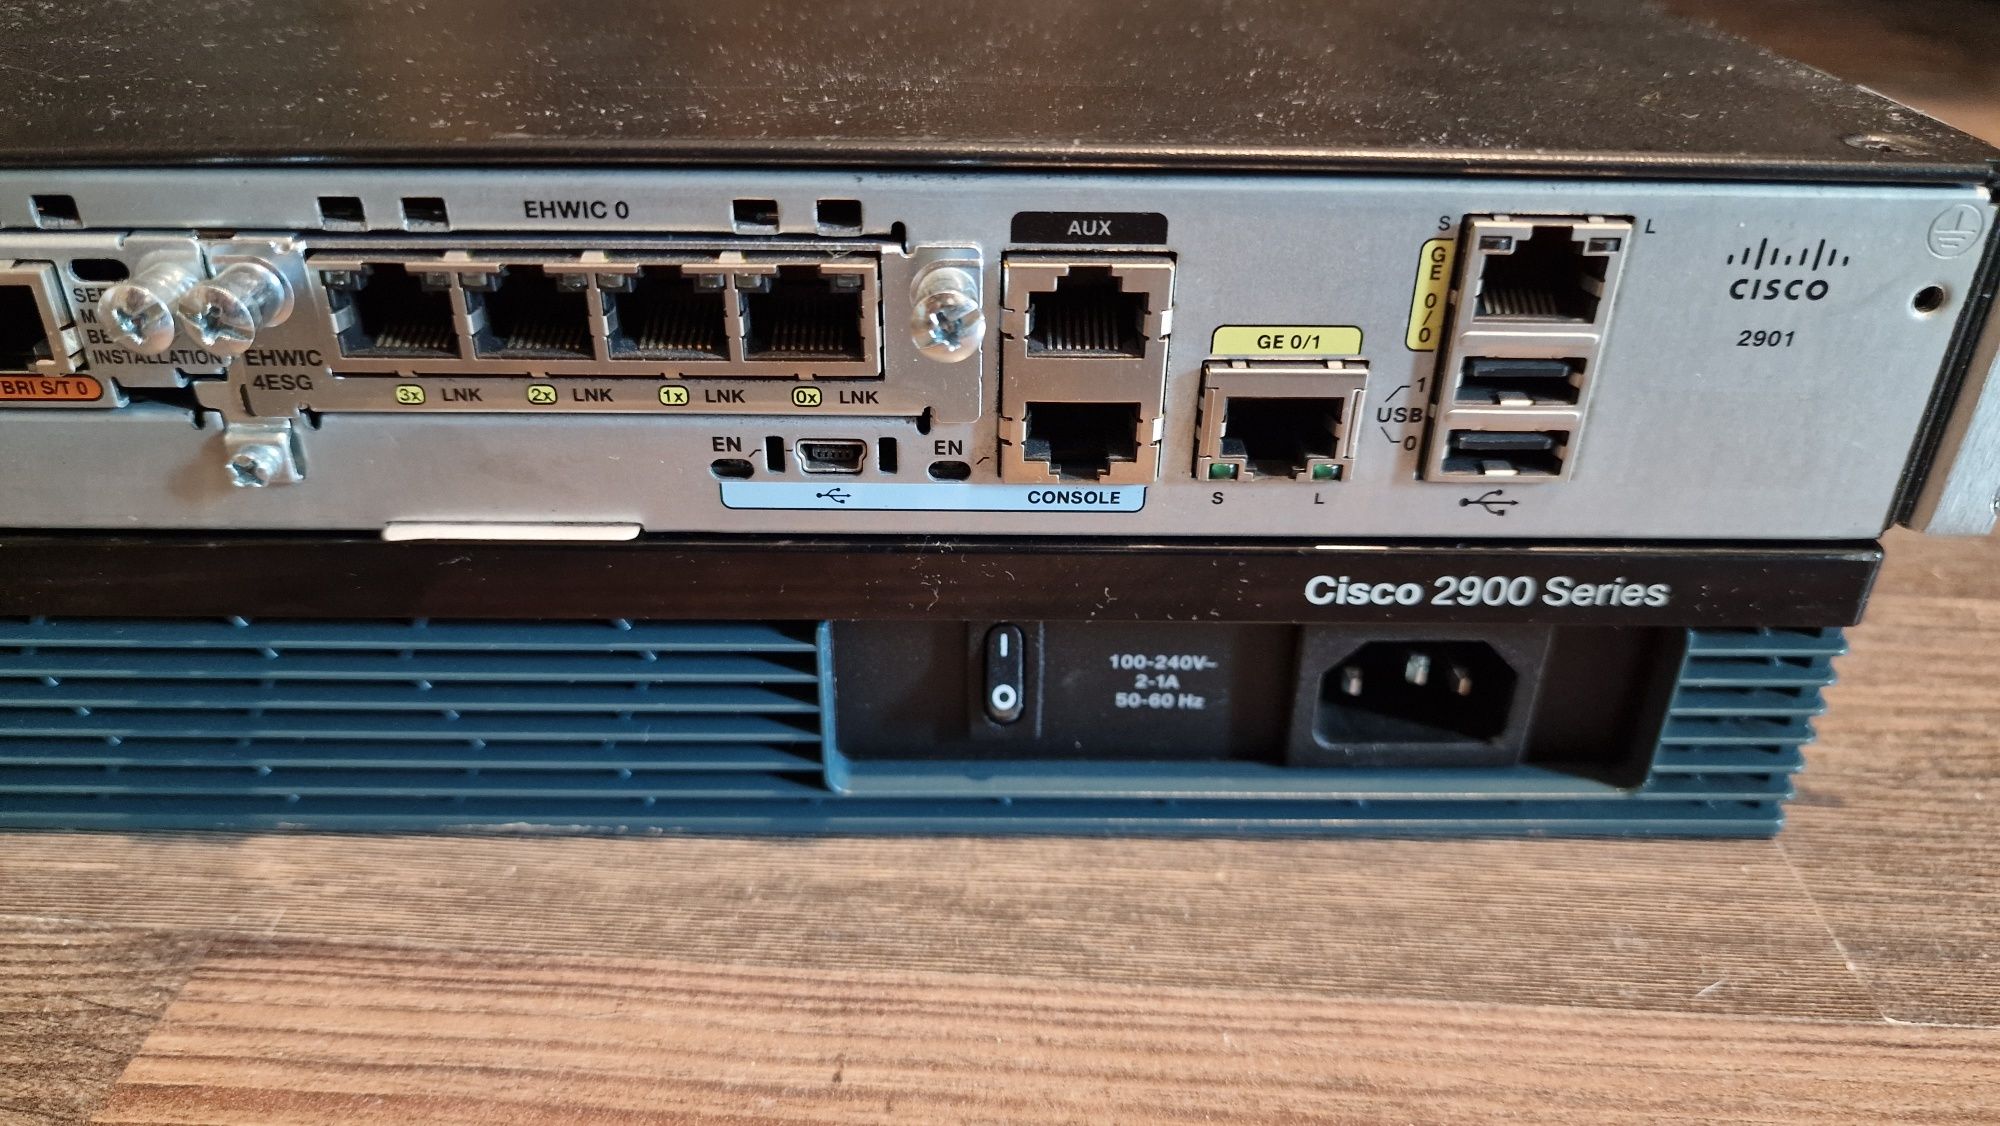 Cisco Router 2901 k9 v06 + ehwic-4esg module